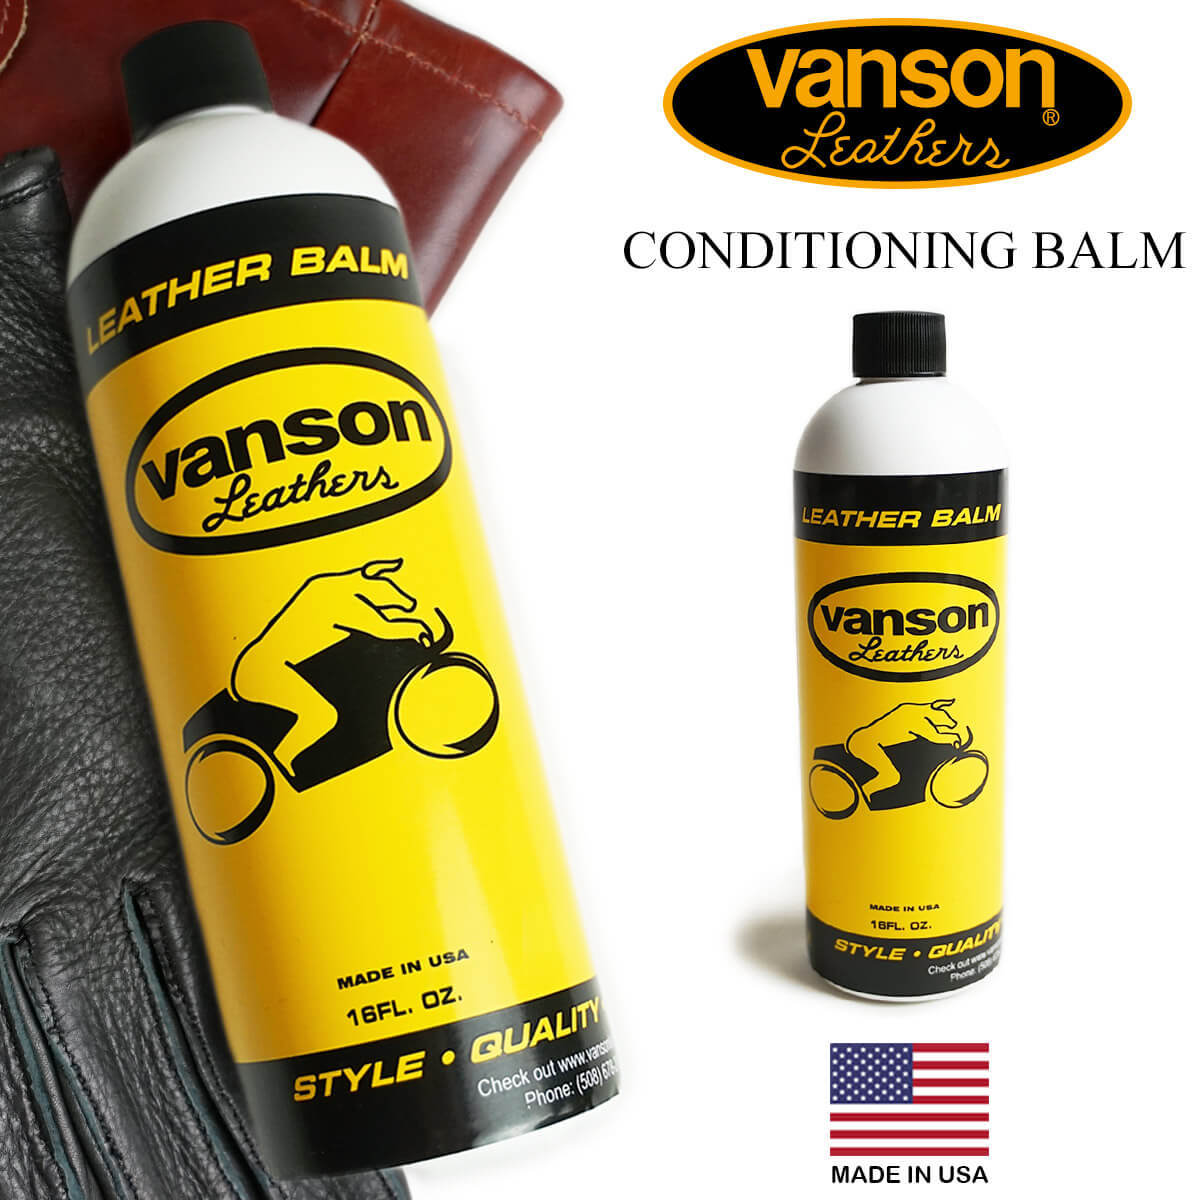 バンソン VANSON ケアオイル 最安値に挑戦 コンディショニングバーム BALM 激安特価品 CONDITIONING